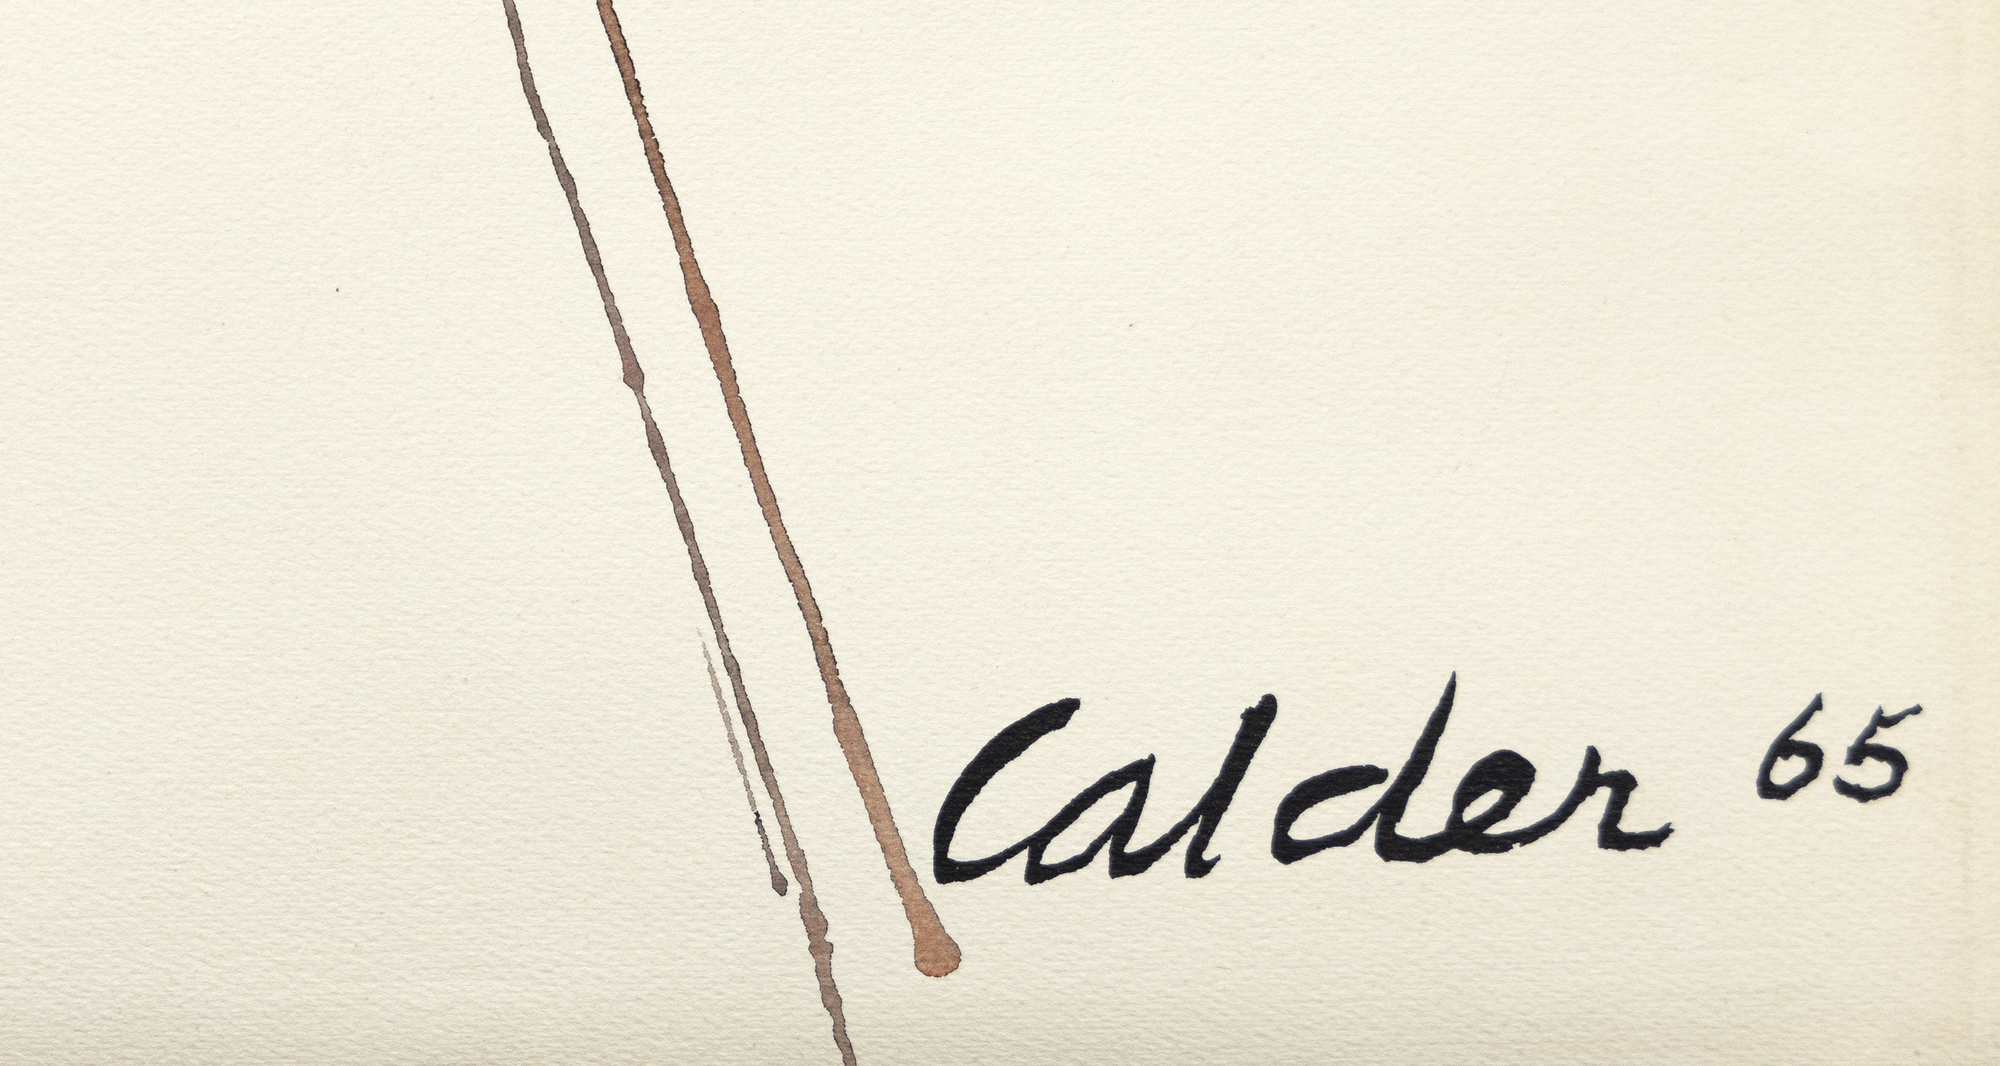 &quot;Wigwam rouge et jaune&quot;, ein fesselndes Gouache-Gemälde von Alexander Calder, ist eine lebendige Erkundung von Design und Farbe. Die Komposition wird von einem Gitter aus diagonalen Linien dominiert, die sich in der Nähe ihres Scheitelpunkts kreuzen, und strahlt ein dynamisches Gleichgewicht aus. Calder bringt mit roten und gelben Rautenformen ein Element der Laune ins Spiel, das dem Werk Verspieltheit verleiht und eine festliche Atmosphäre schafft. Rote Kugeln am Scheitelpunkt der rechten Linien erwecken einen skurrilen Eindruck, während kleinere graue Kugeln auf den linken Linien für Kontrast und Gleichgewicht sorgen. Calders meisterhafte Verschmelzung von Einfachheit und lebendigen Designelementen macht Wigwam rouge et jaune zu einem visuellen Vergnügen.